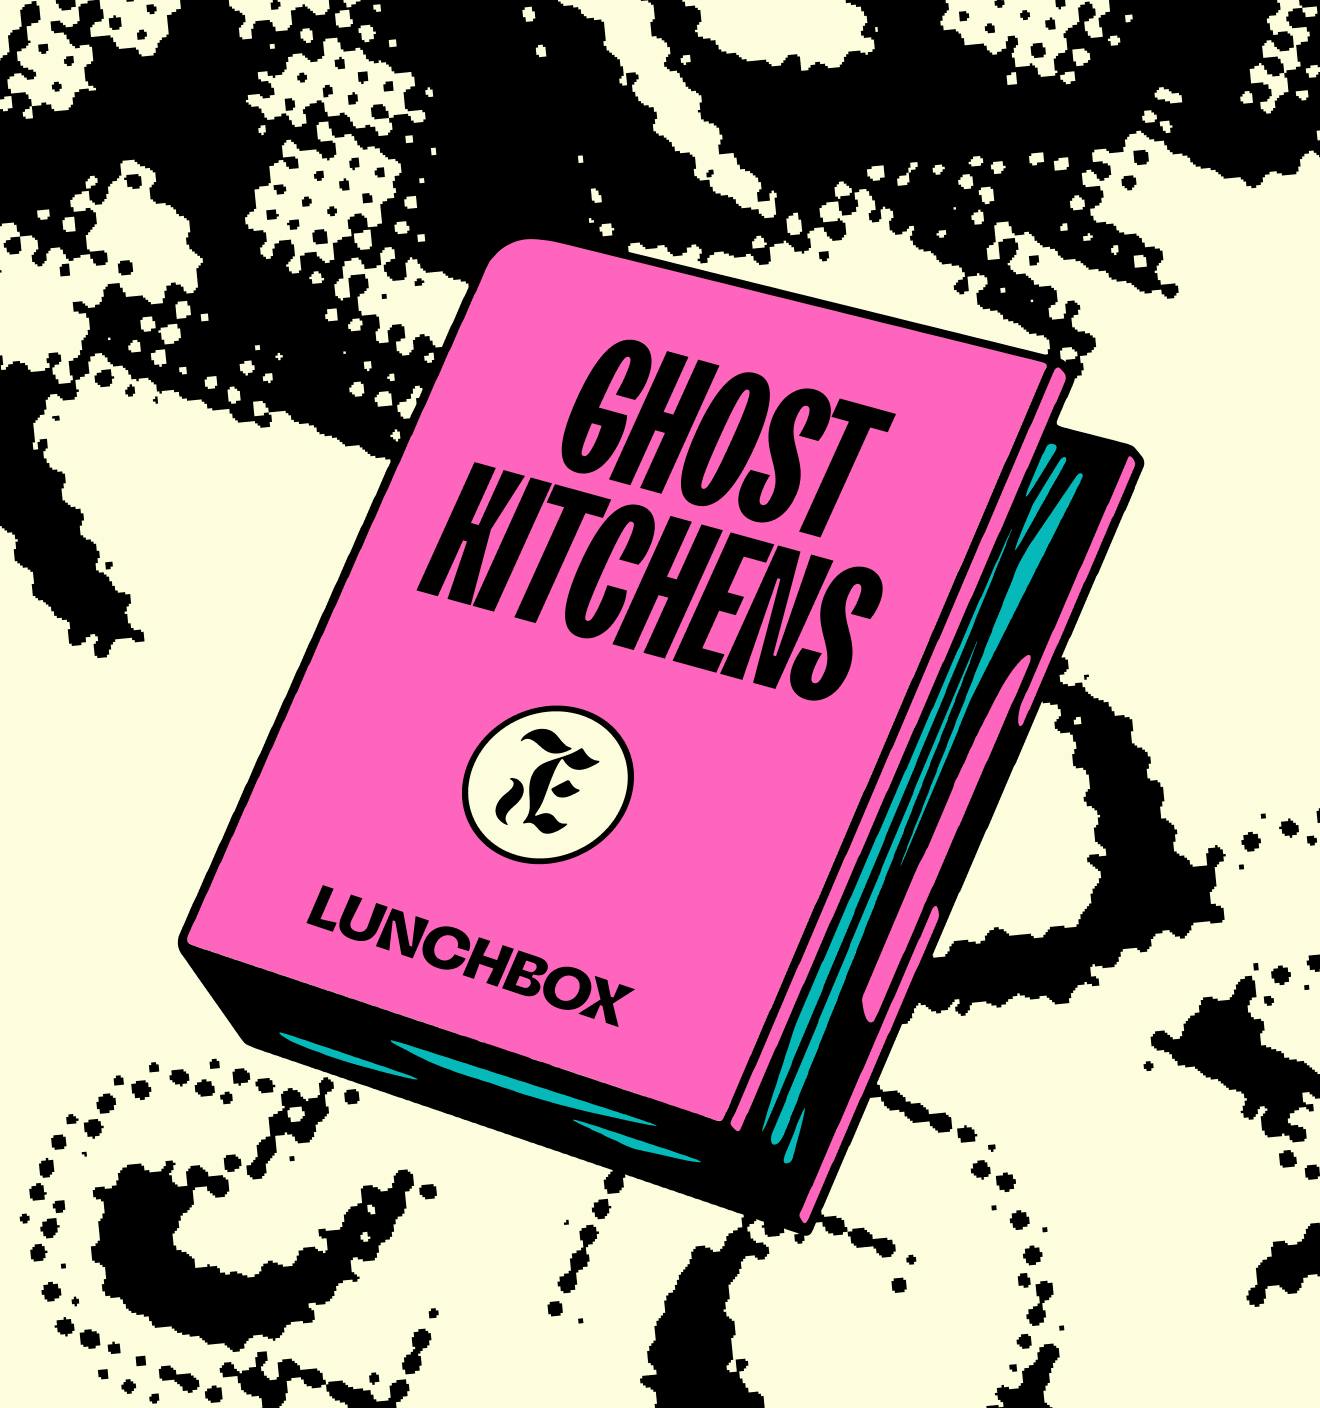 host ghost kitchen